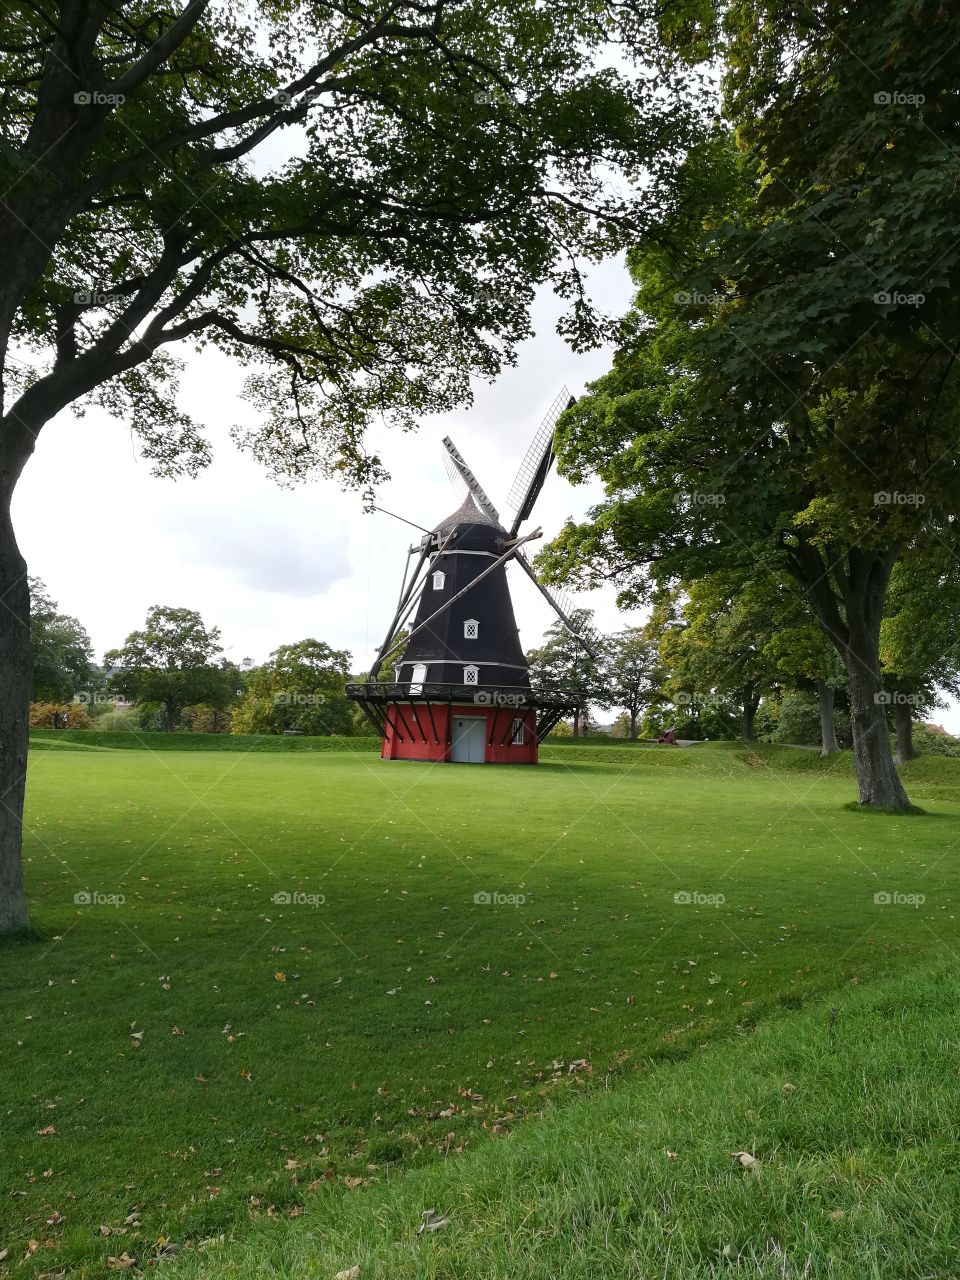 Royal Danmark Windmill in green Landscape 